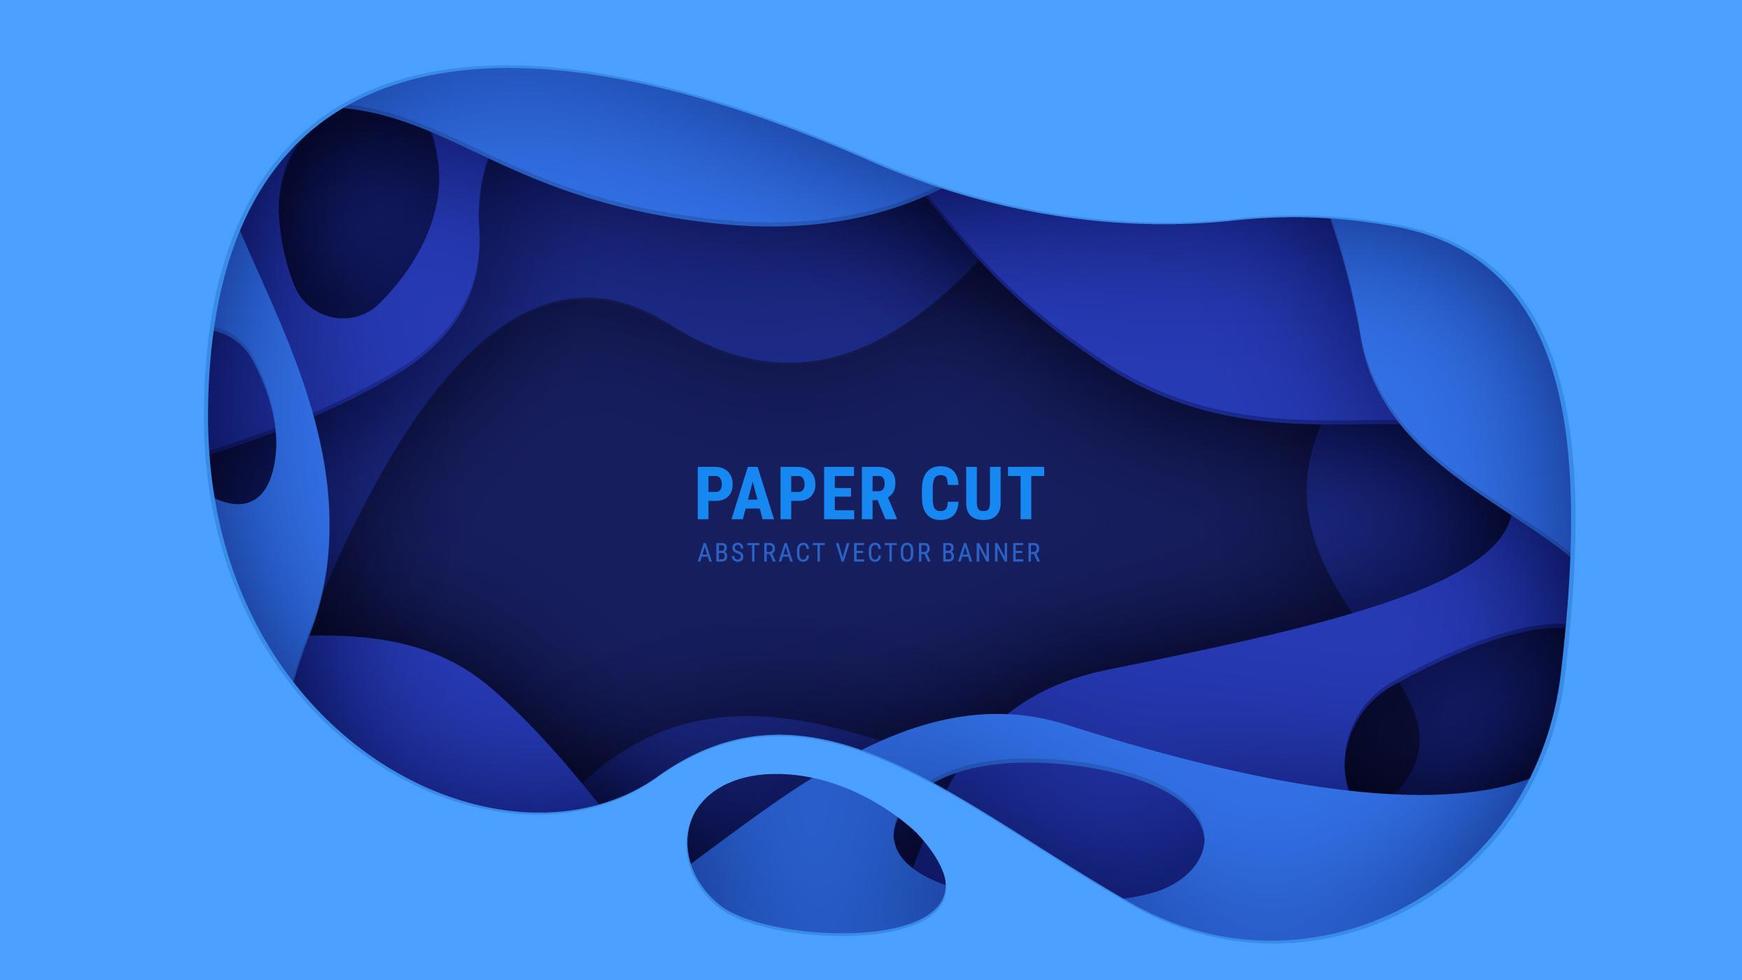 Bannière de vecteur de coupe de papier bleu abstrait 3D